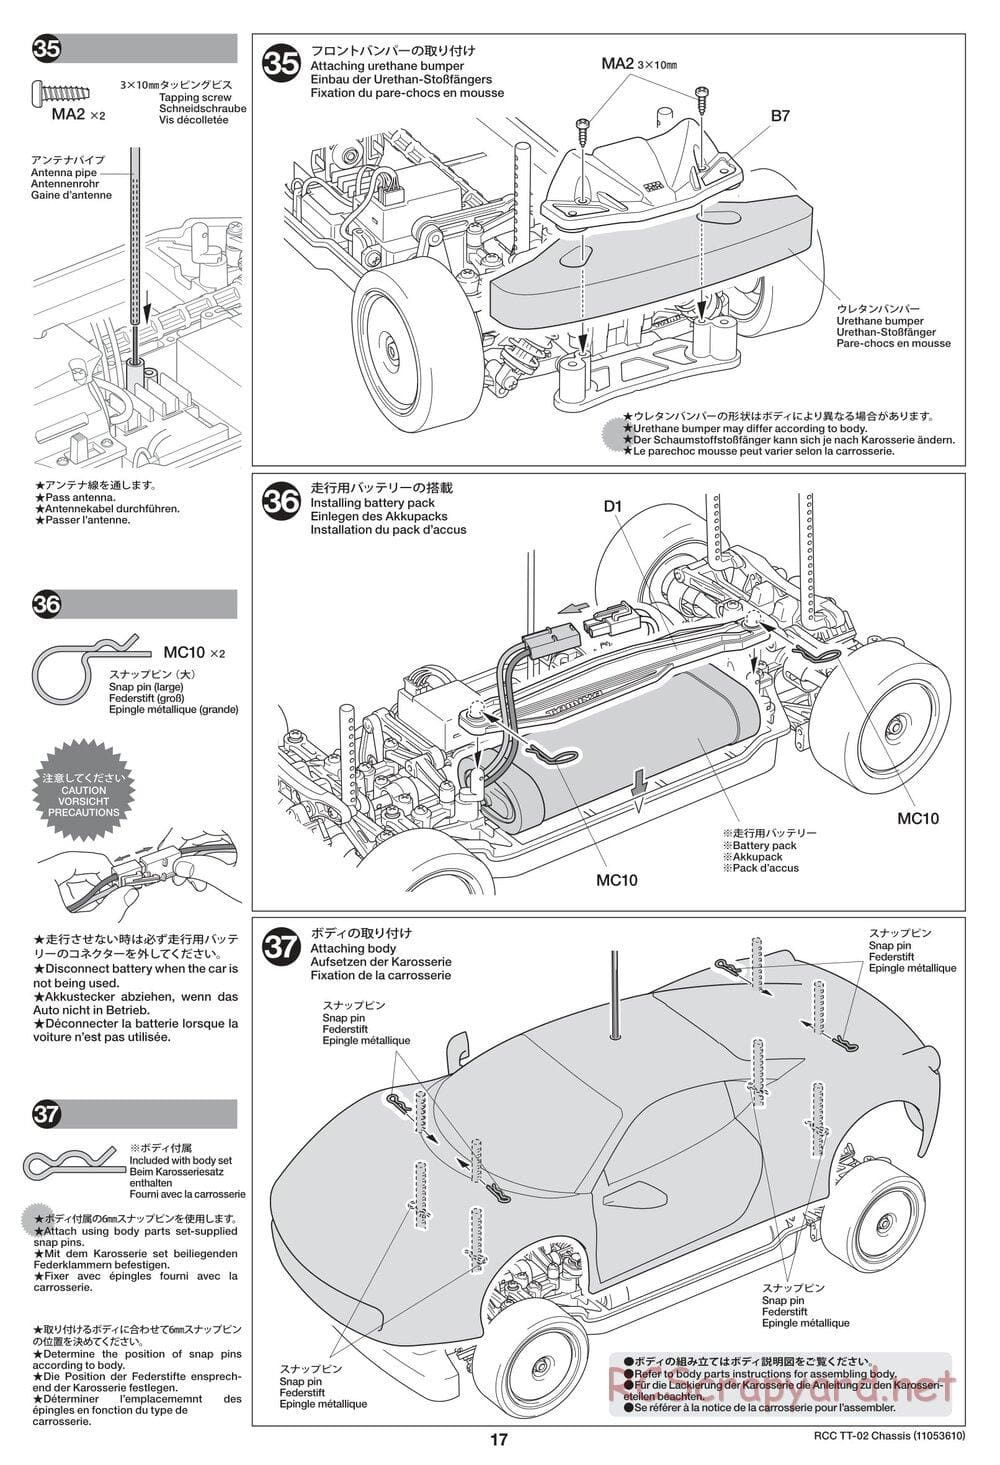 Tamiya - TT-02 Chassis - Manual - Page 17